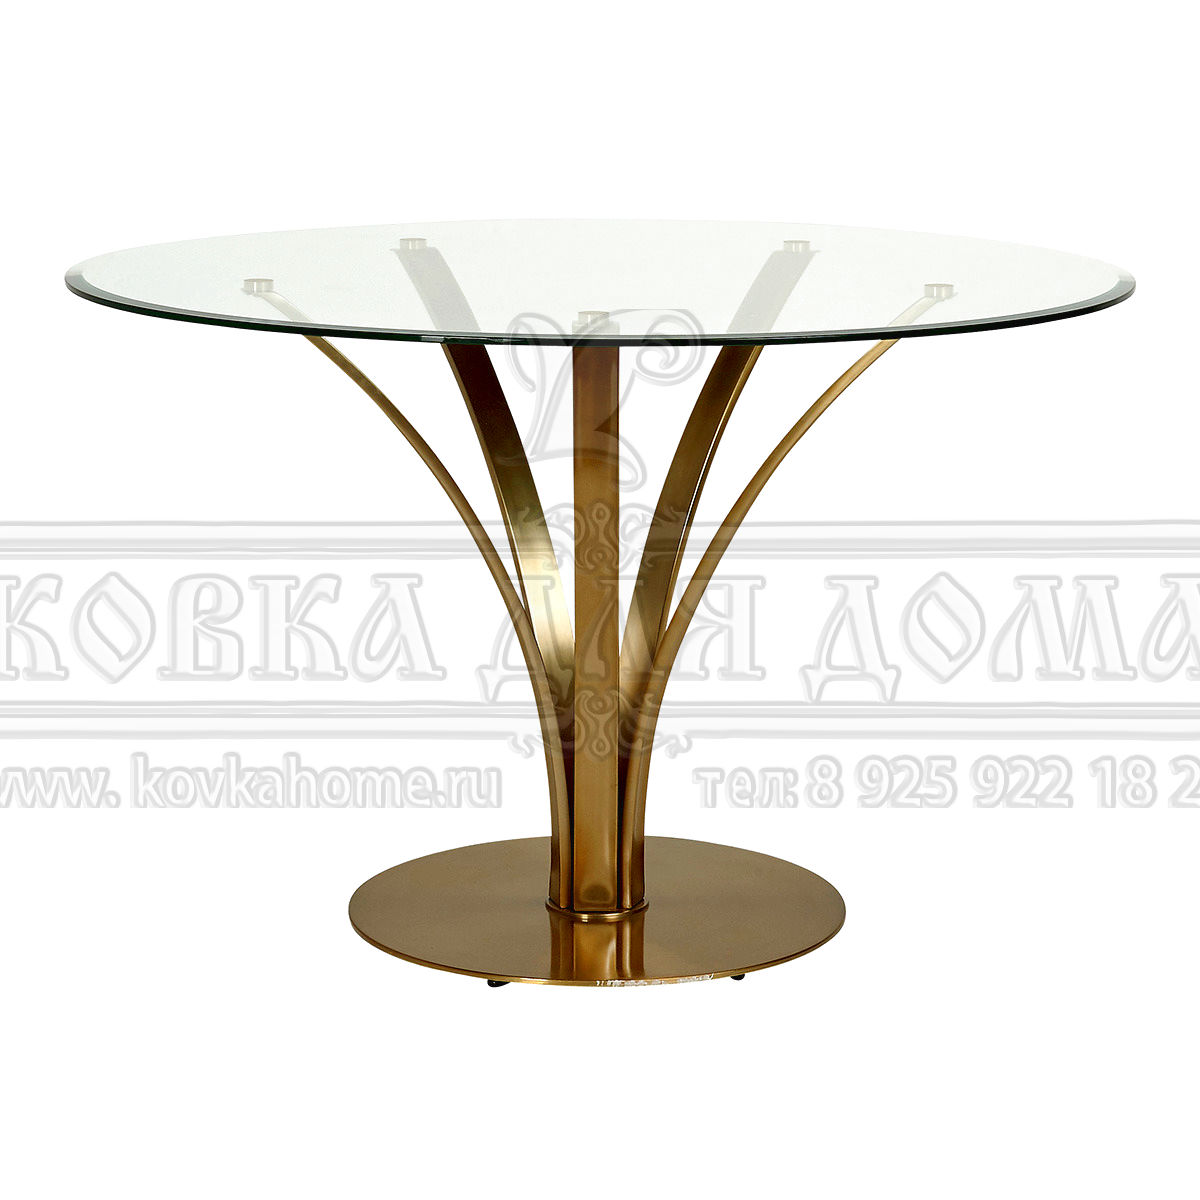 Фото Стол обеденный в современном стиле, стеклянная круглая столешница на металлокаркасе. Размеры 750(H)х1000(D)мм.